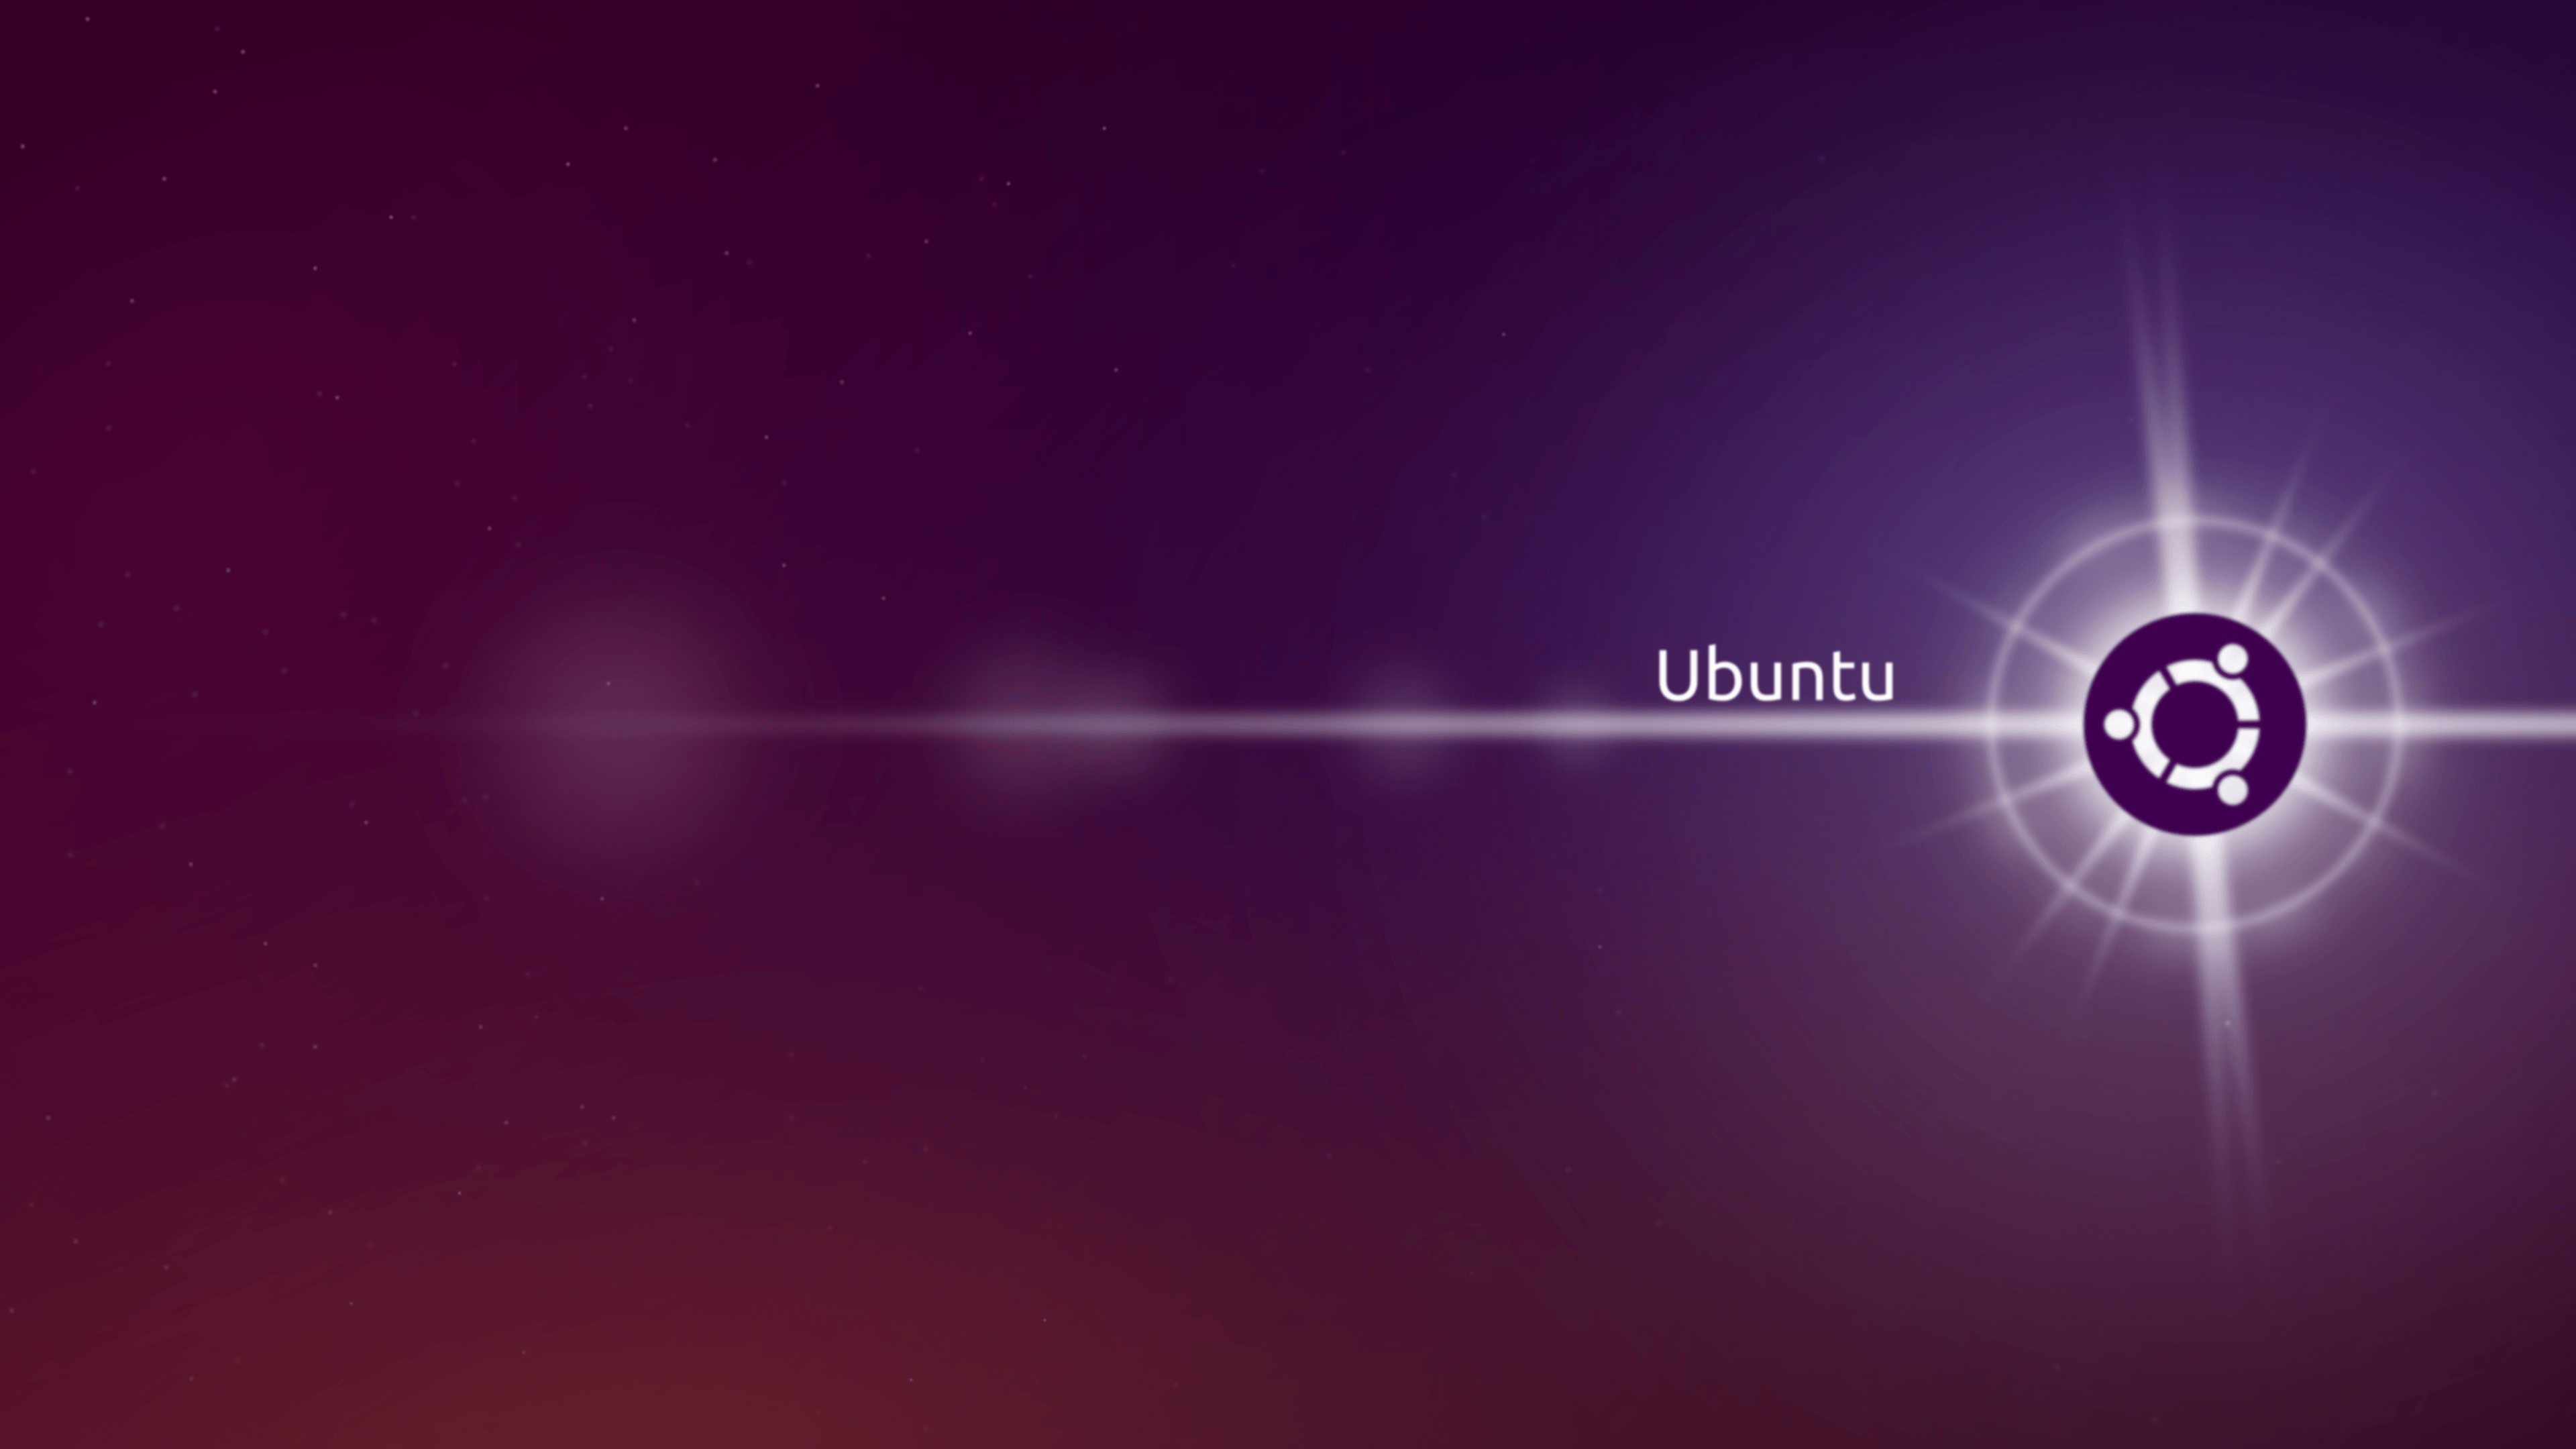 Hình nền Ubuntu 4k sẽ khiến cho desktop của bạn trở nên đầy sức sống và sáng tạo. Bộ sưu tập của chúng tôi cung cấp nhiều hình nền Ubuntu 4k đẹp mắt và sống động. Hãy tìm kiếm cho mình một bức ảnh ưng ý nhất và trang trí cho chiếc máy tính của mình.